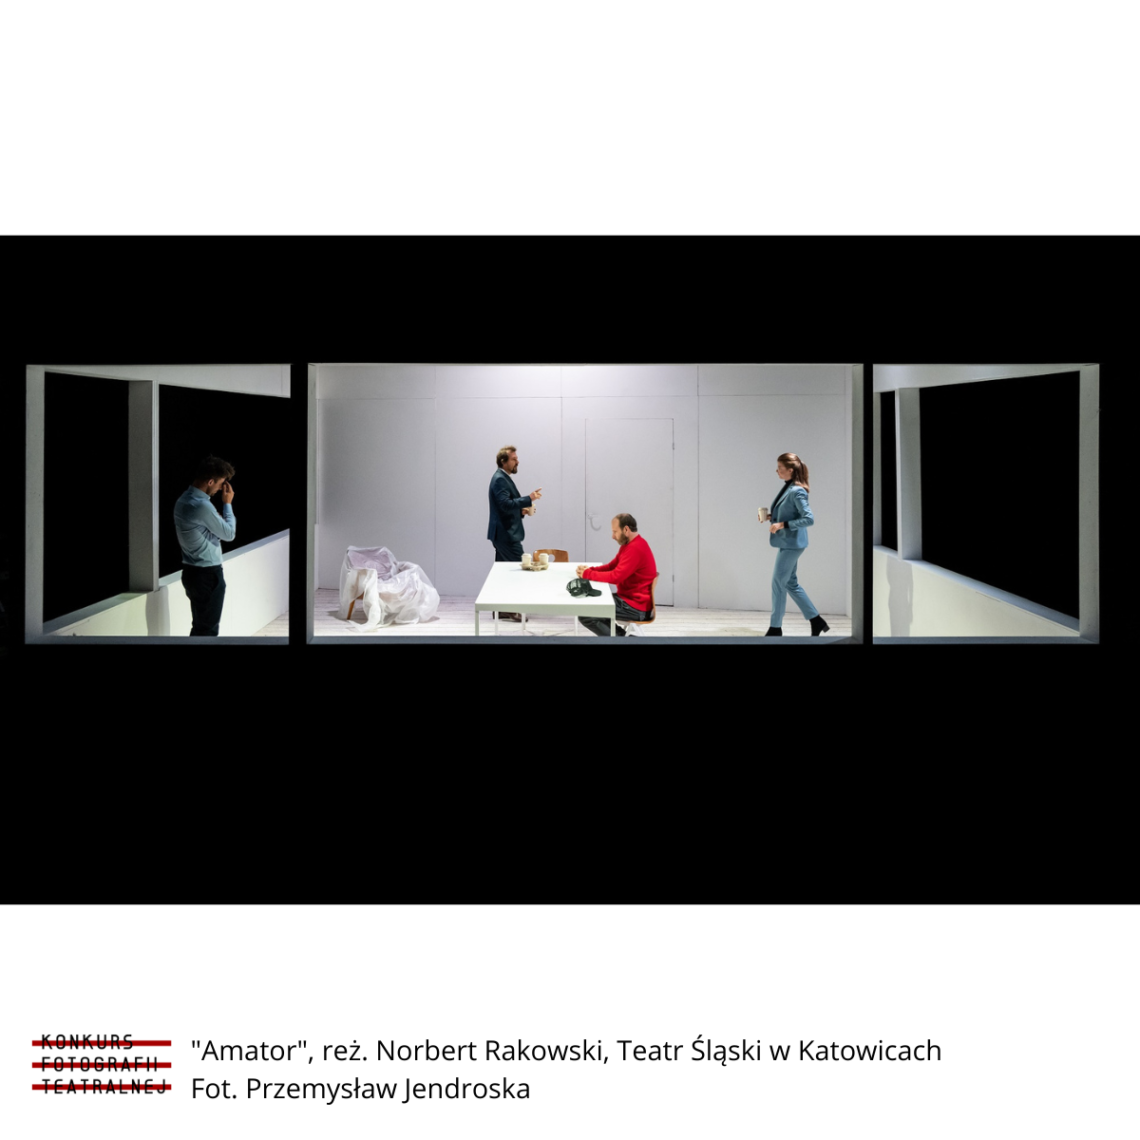 Kadr ze spektaklu Amator 2020: widok z zewnątrz do wnętrza pokoju, w centrum biały prostokątny stół, przy którym siedzi mężczyzna w pomarańczowym swetrze, kobieta i mężczyzna przechadzają się po pomieszczeniu, z boku samotnie stoi mężczyzna